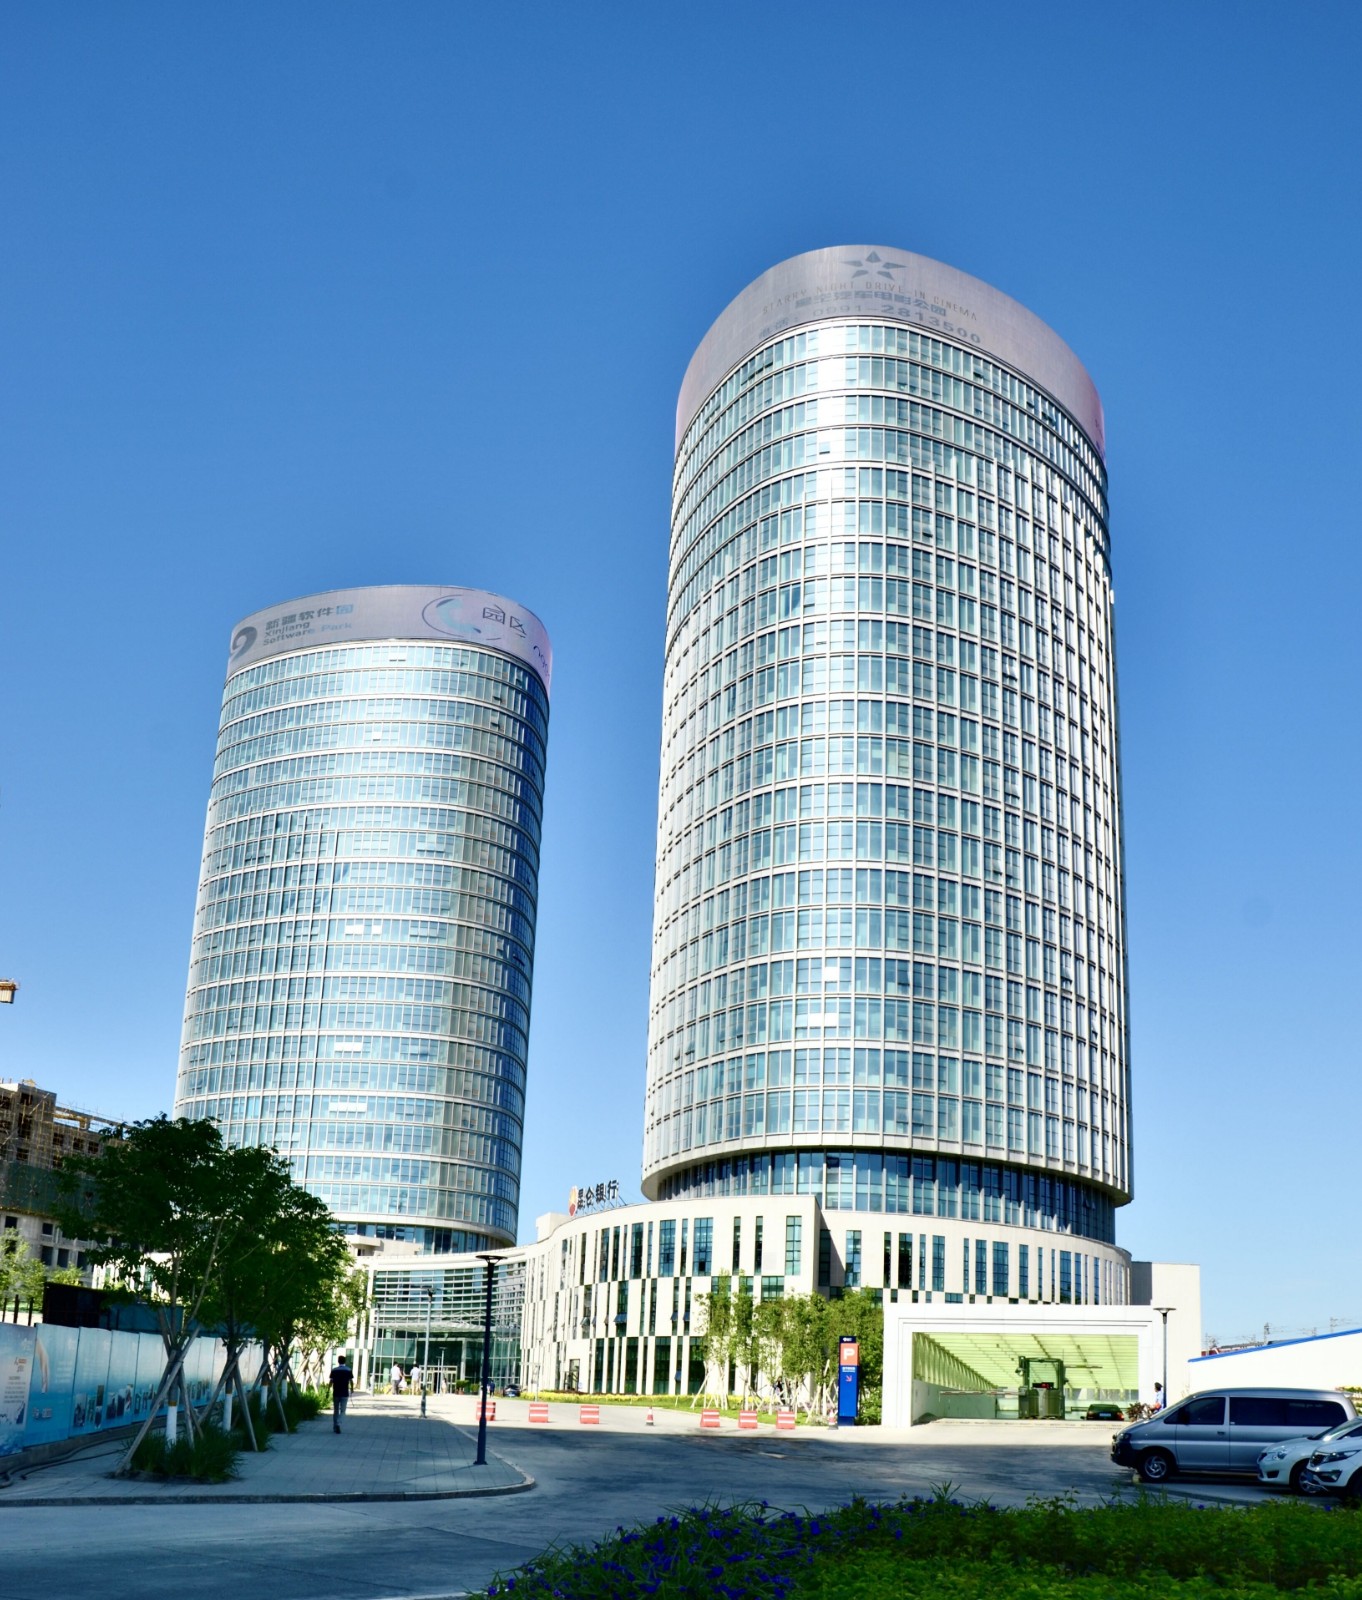 新疆维泰开发股份有限公司承建的”新疆软件园创业智能大厦”工程实景